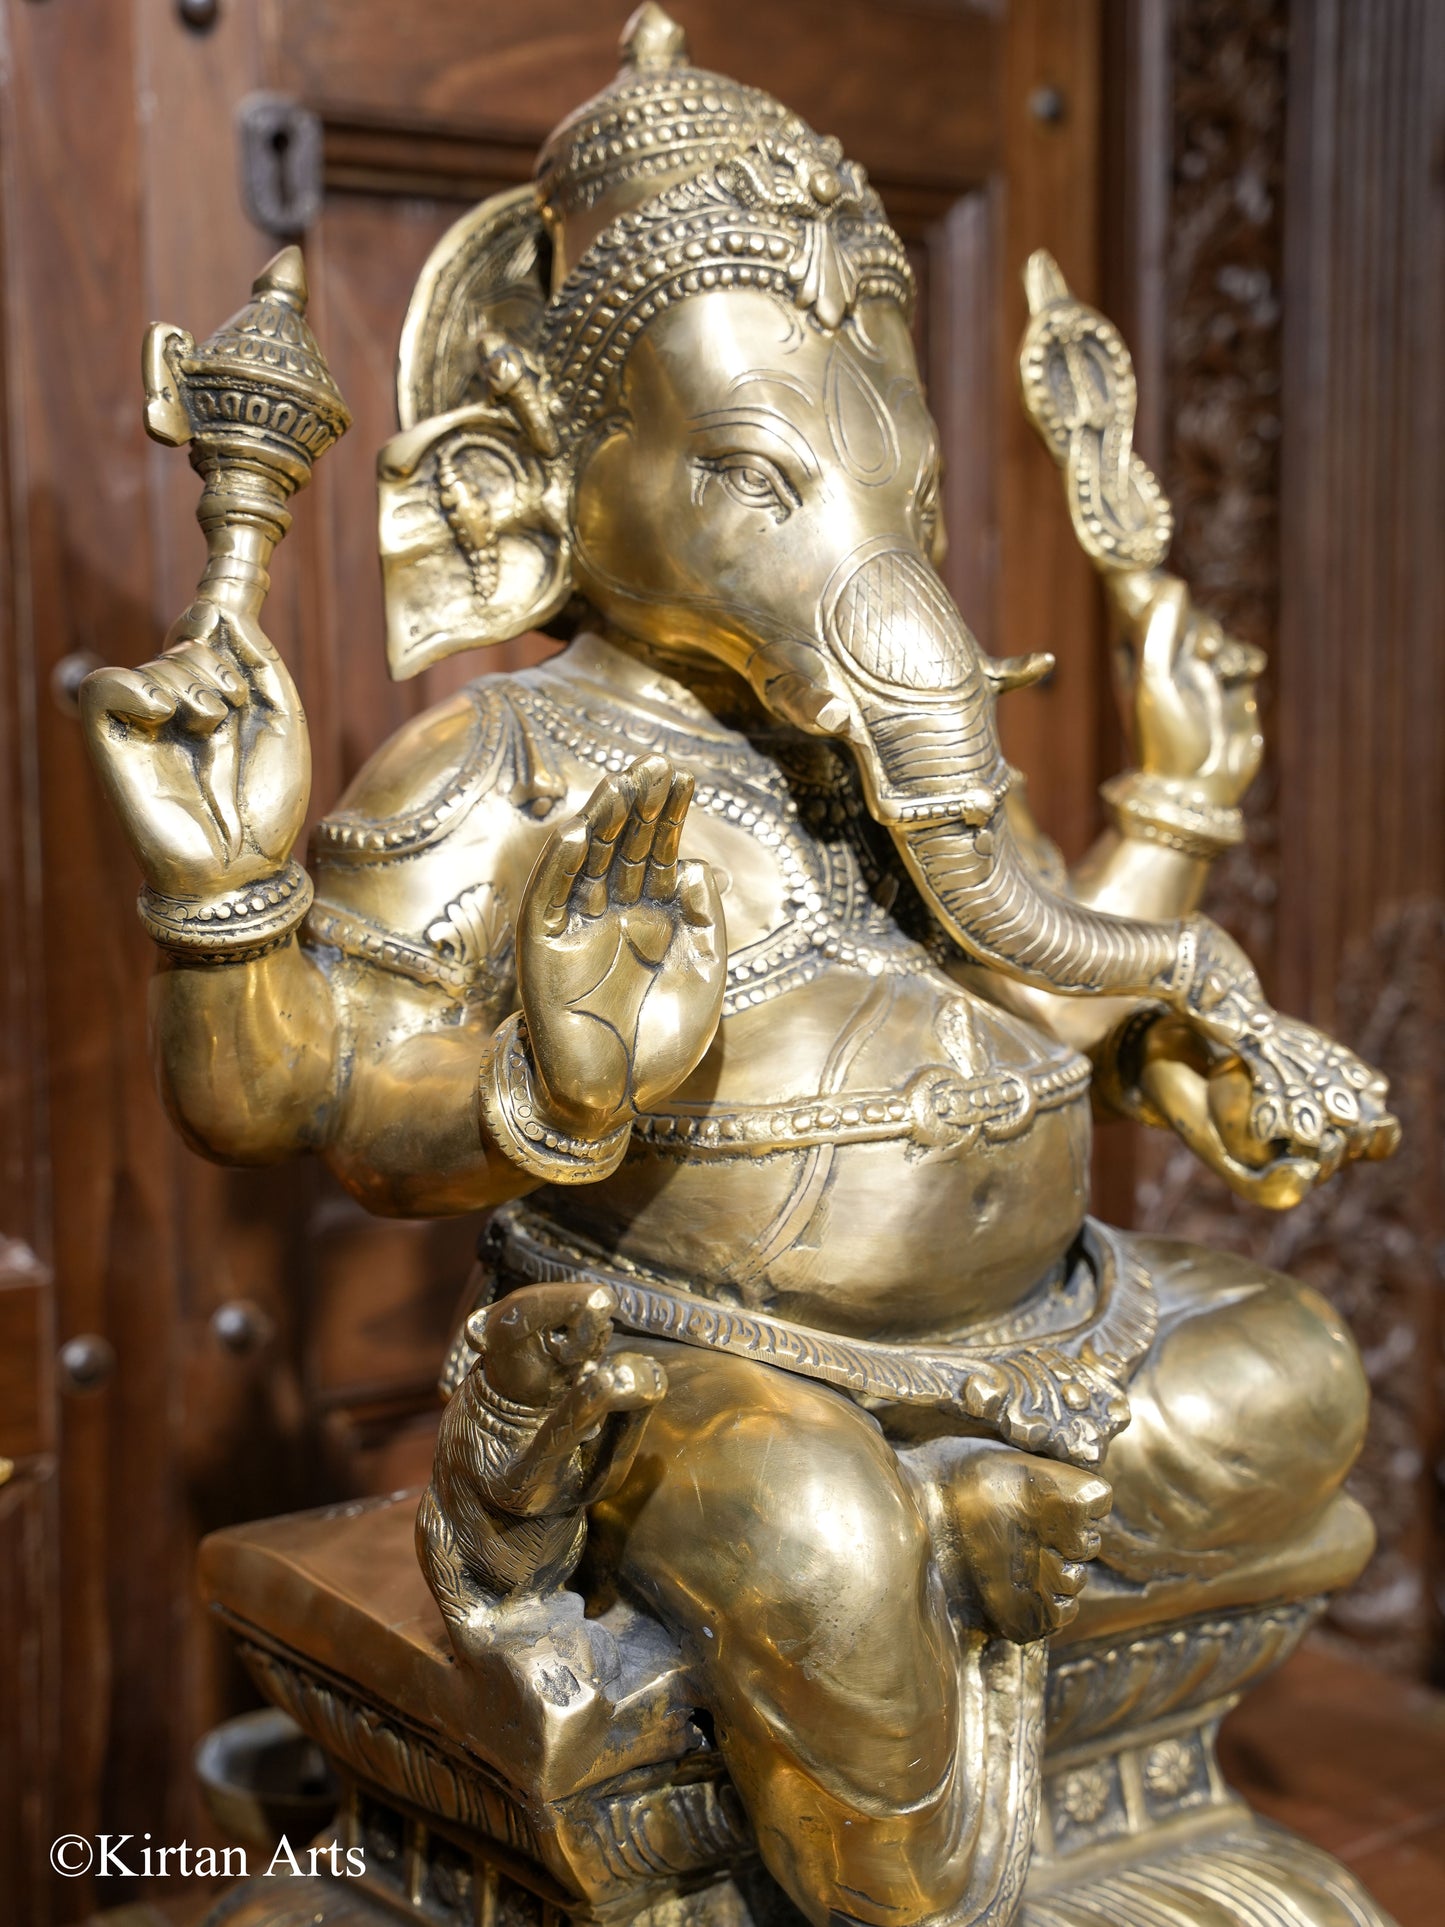 Lord Ganesha Brass Idol 26"